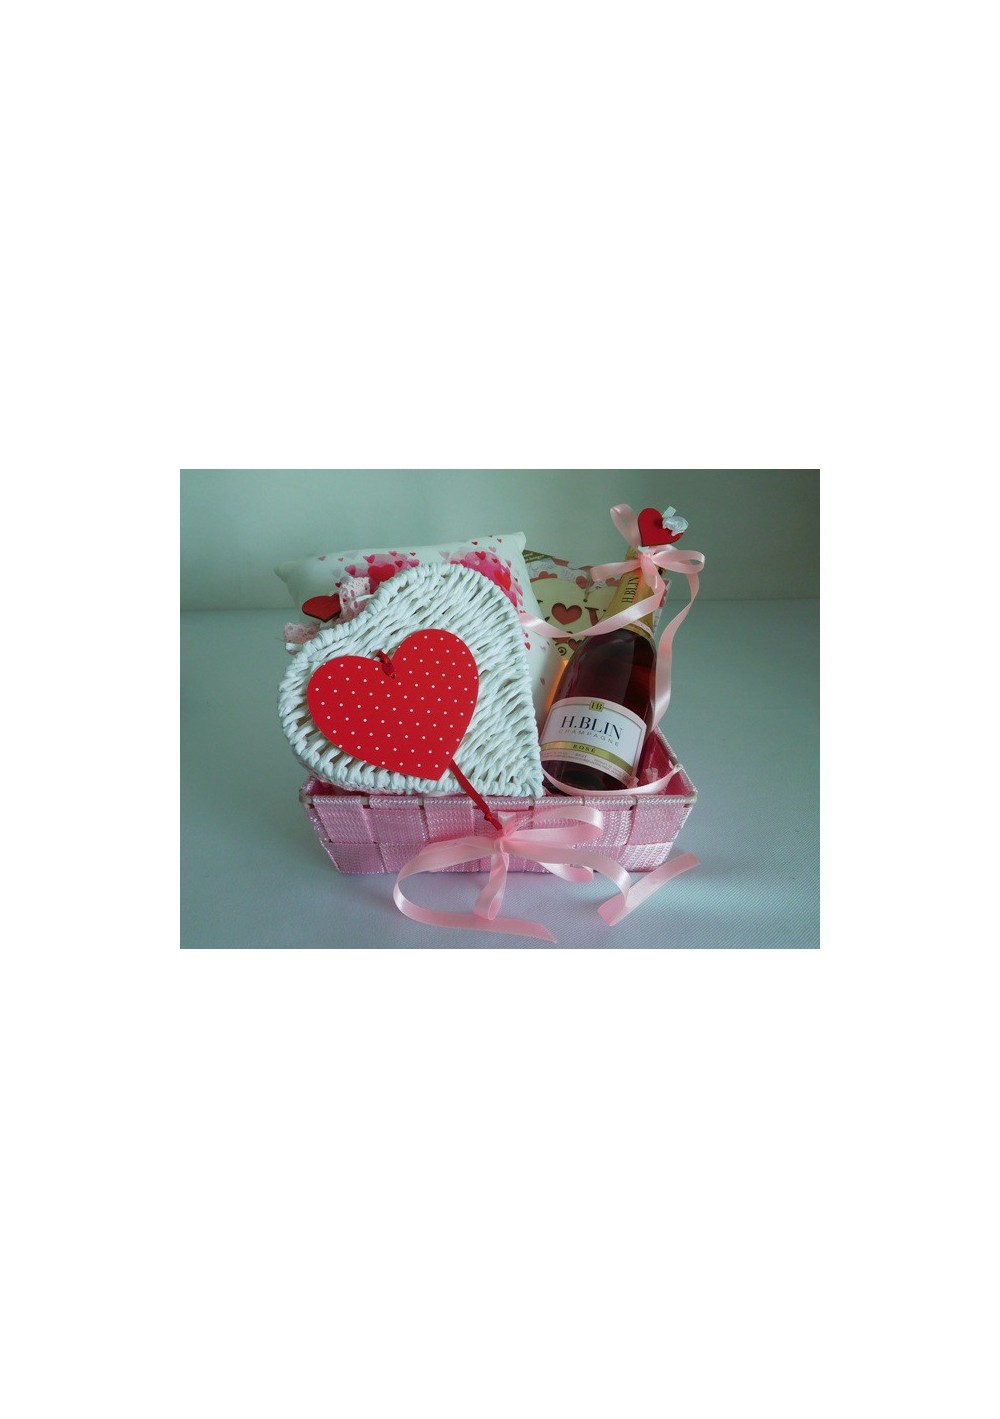 Valentine's Day 2017 gift basket love